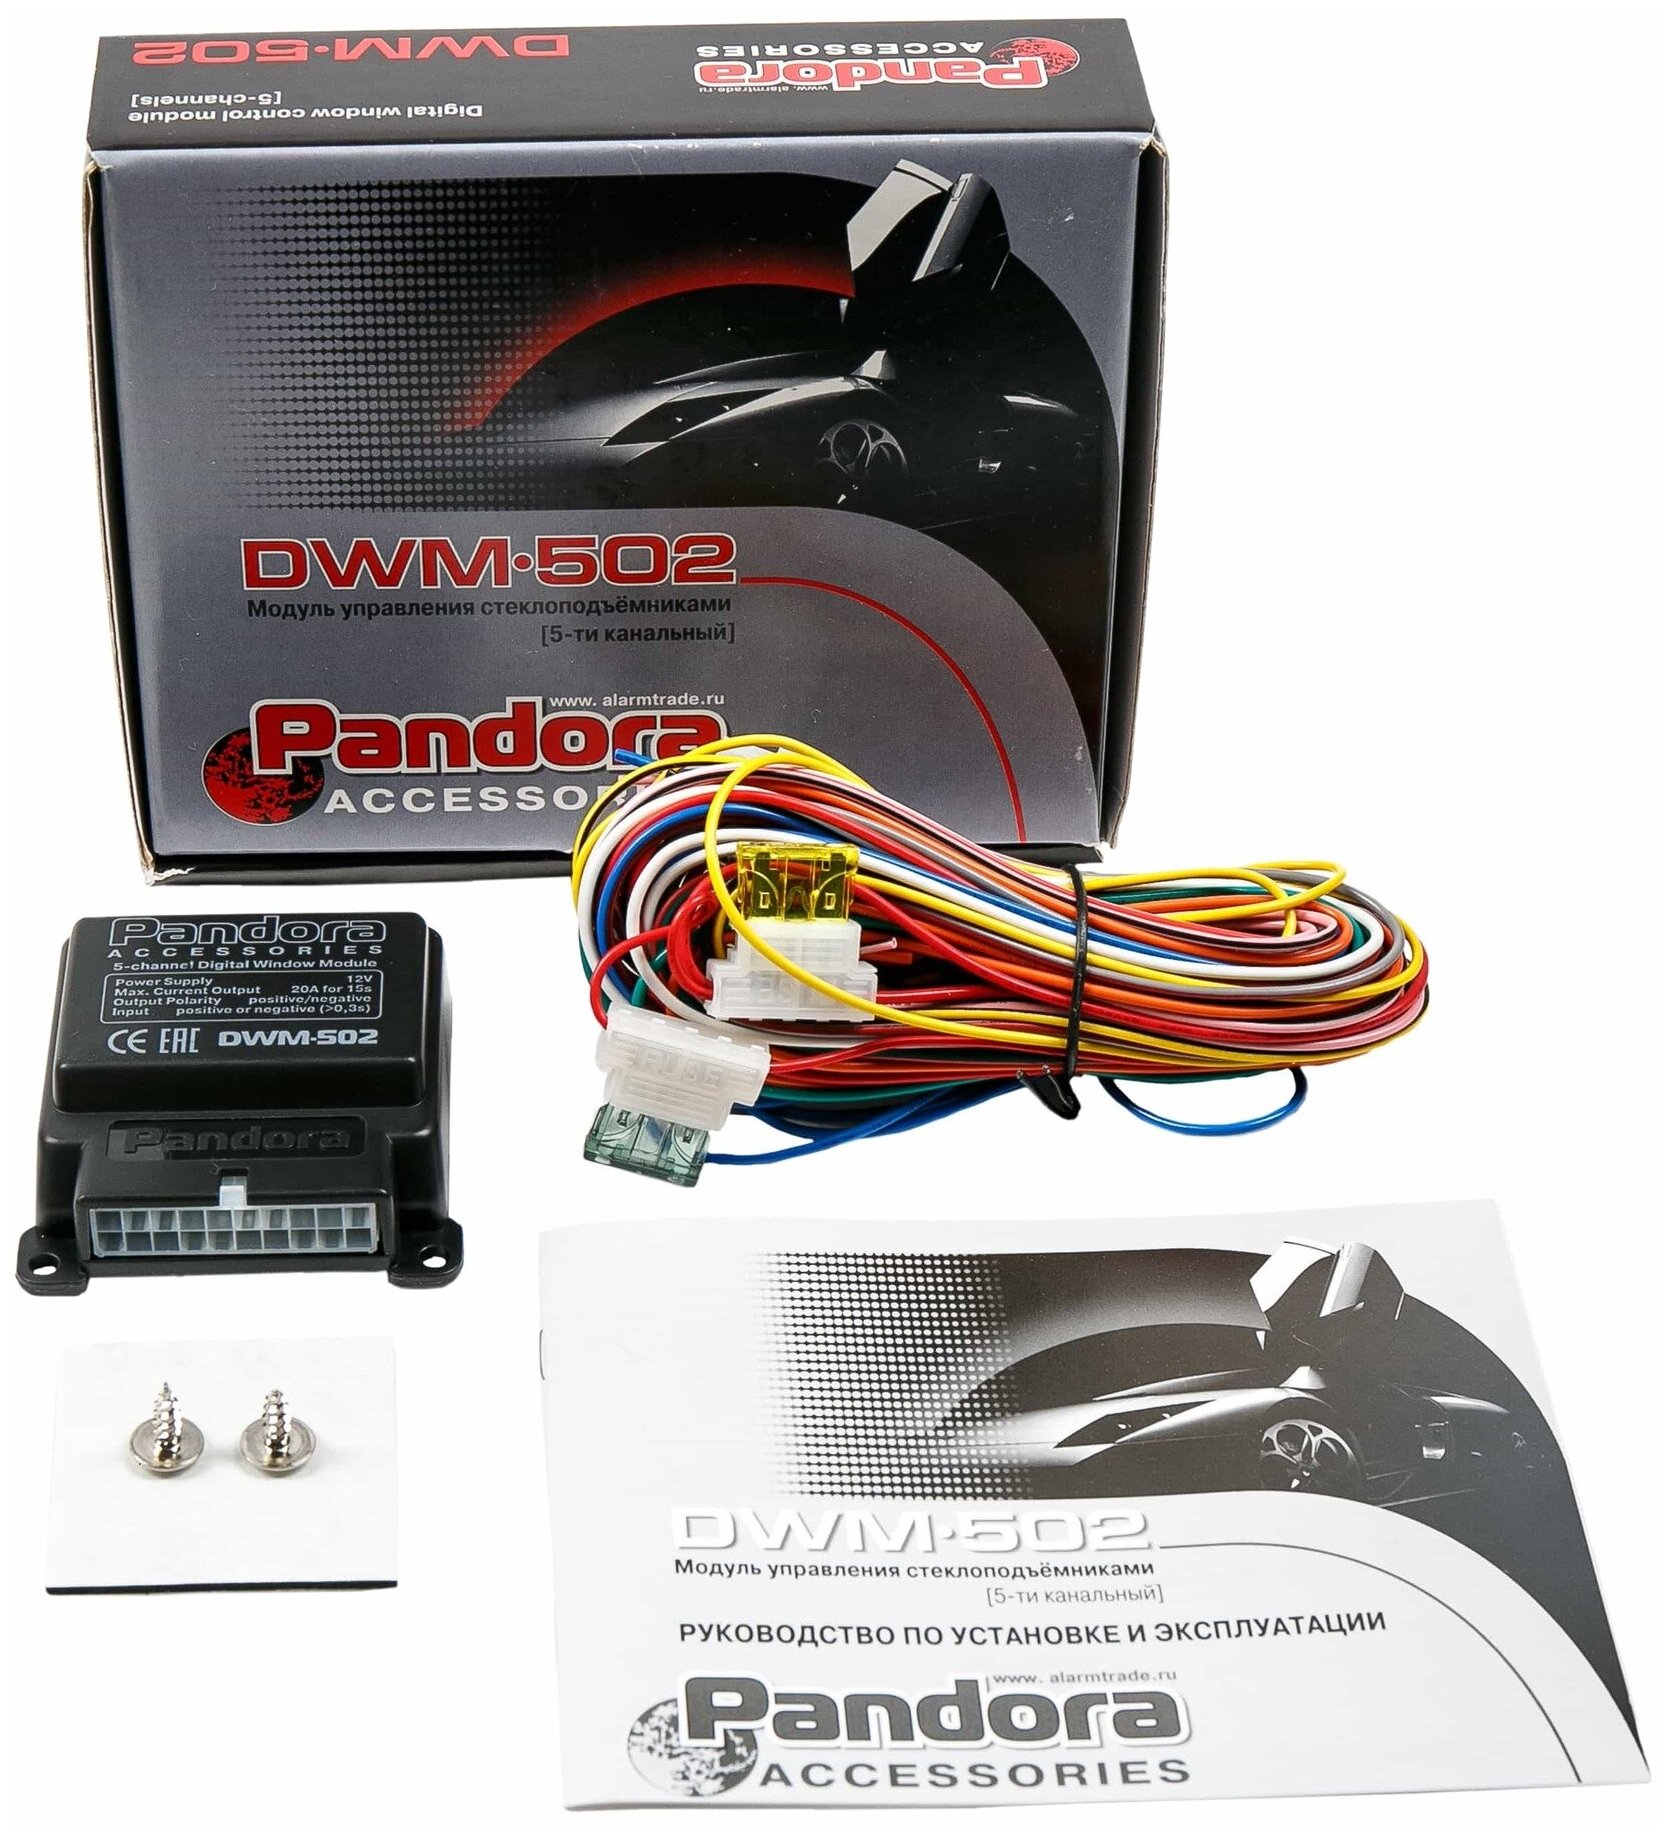 Модуль управления стеклоподьемниками Pandora DWM 502